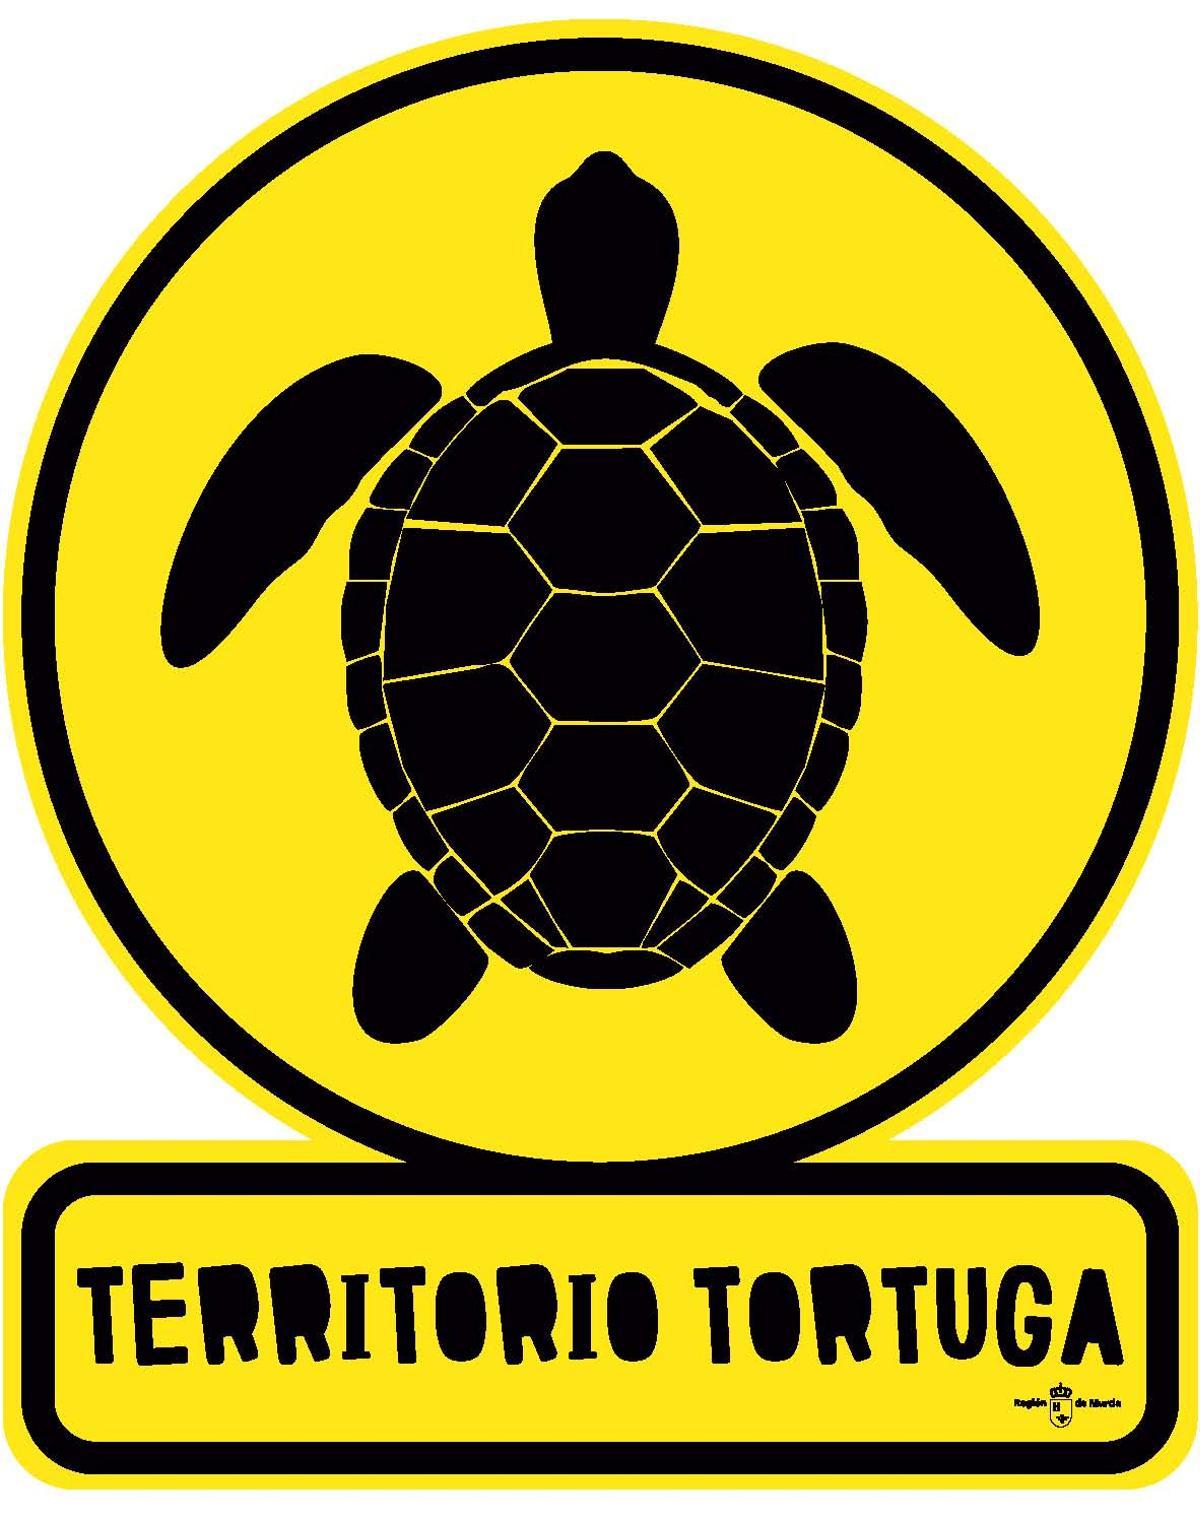 Territorio Tortuga